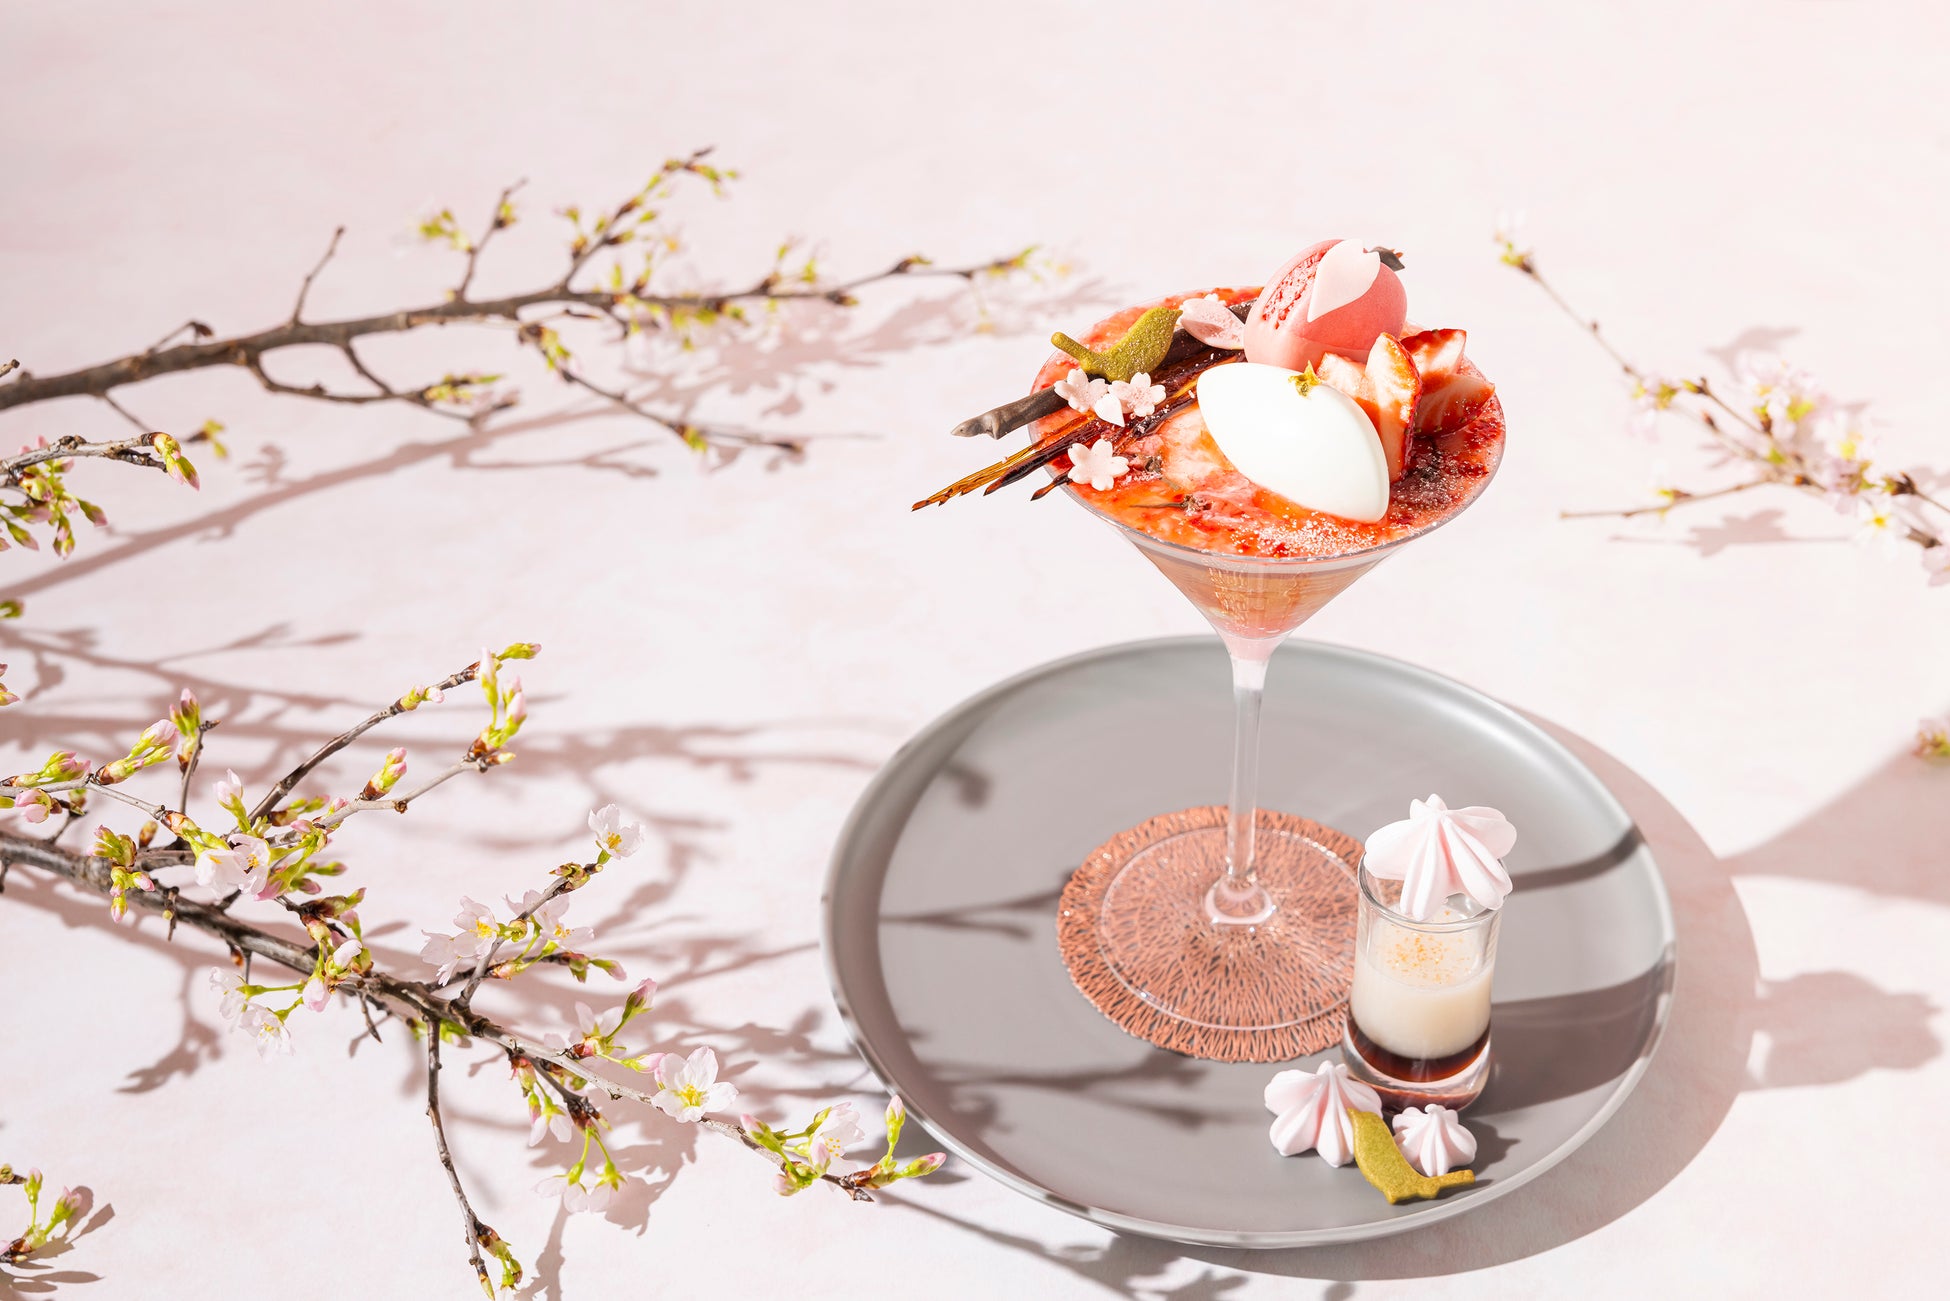 ザ・プリンスギャラリー 東京紀尾井町 桜の絨毯を描いた春の訪れを祝うパフェ「SAKURA Bloom Parfait」を販売